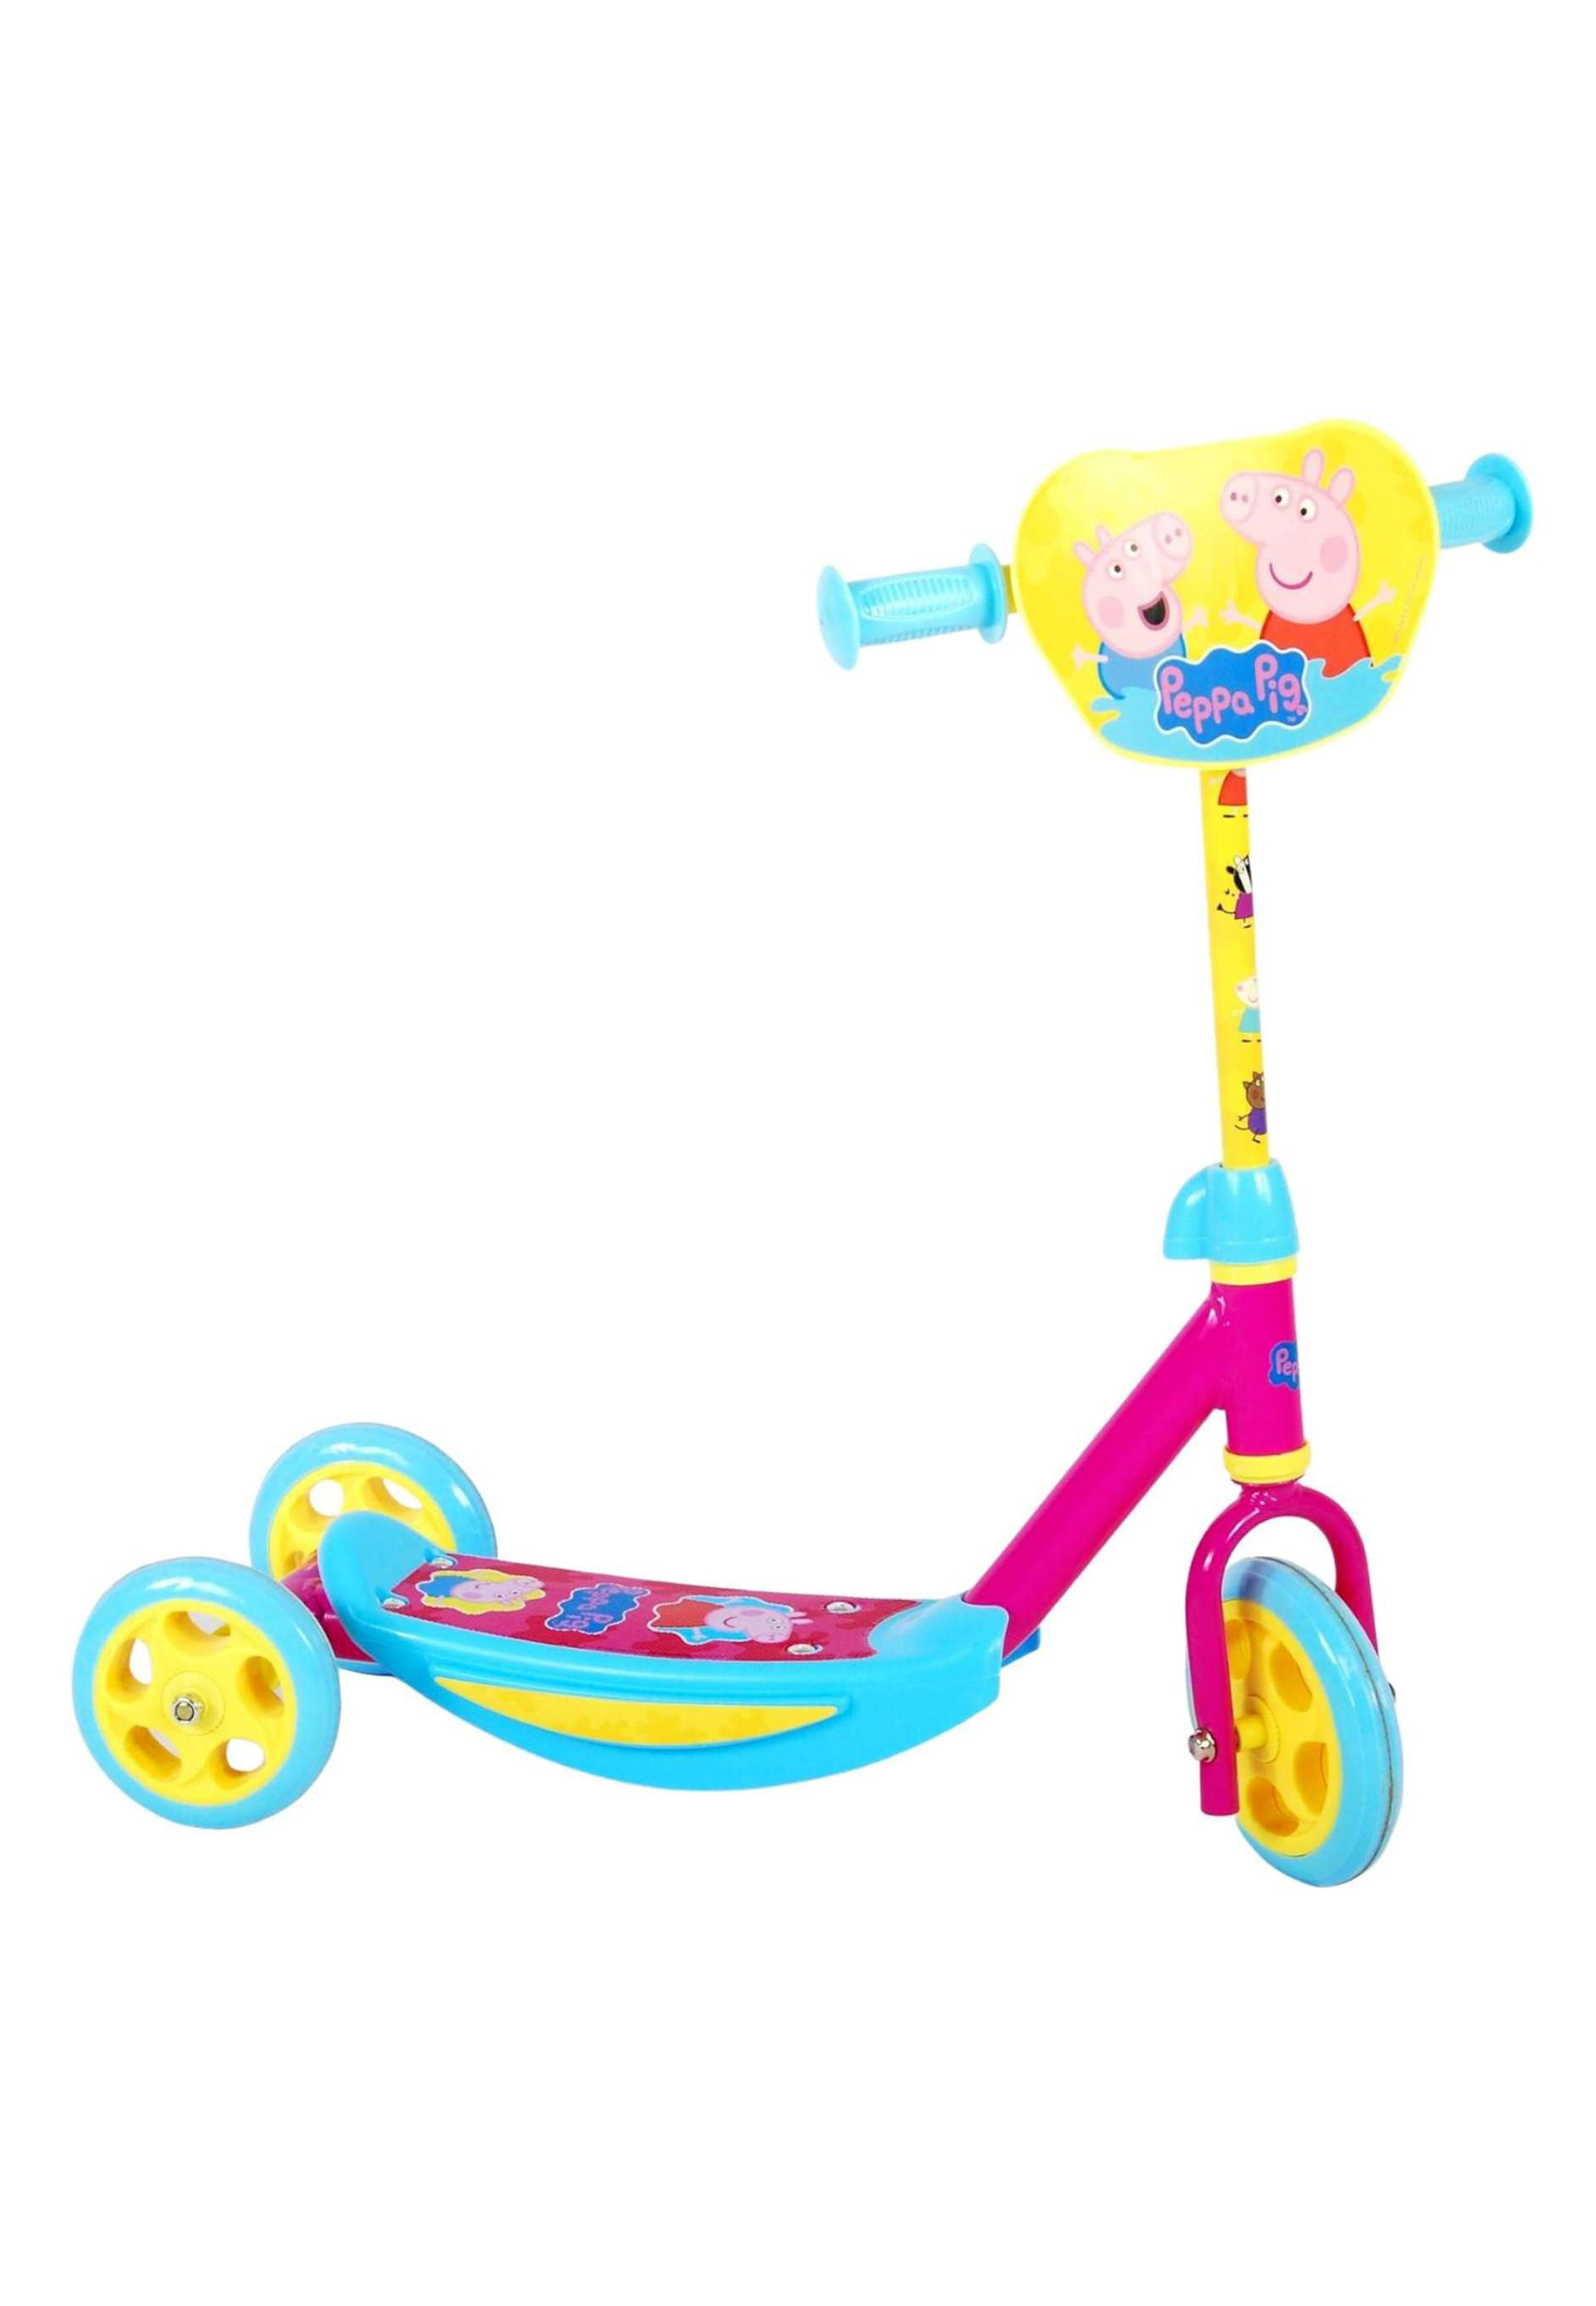 Peppa Wutz Pig Kinder Roller Tretroller Dreirad Scooter